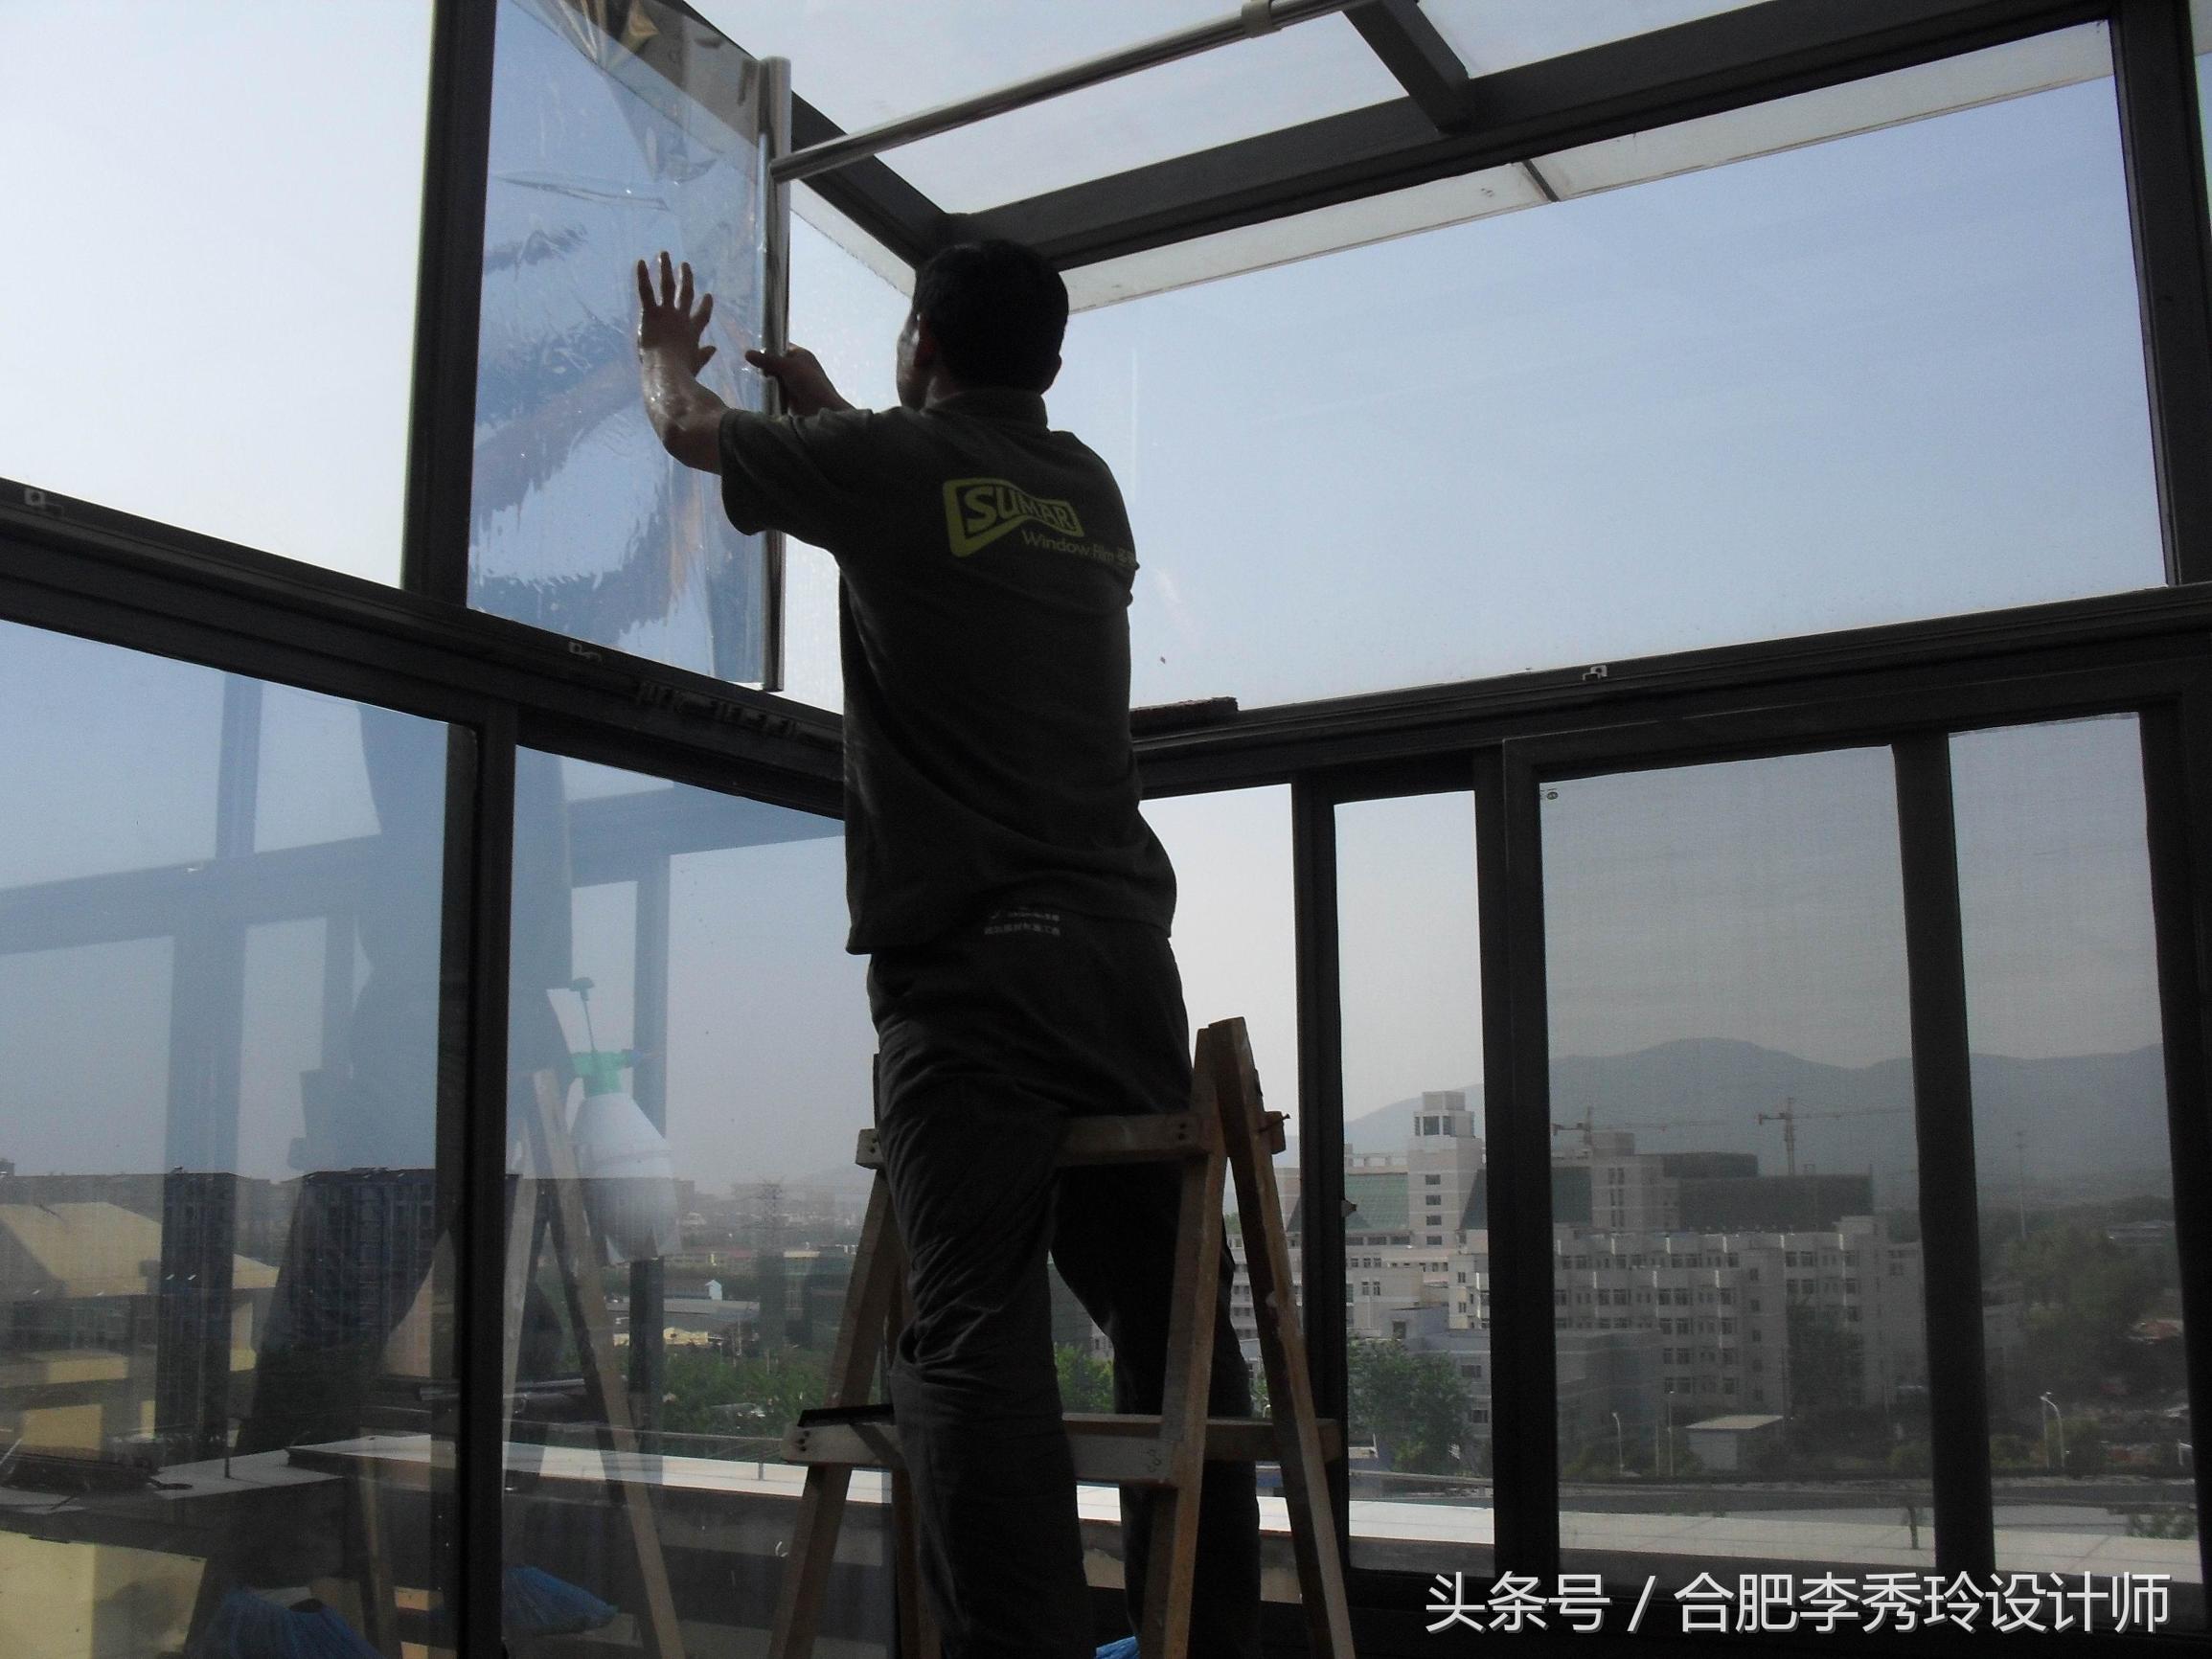 阳台窗户玻璃贴膜效果图_阳台玻璃贴膜优缺点-2